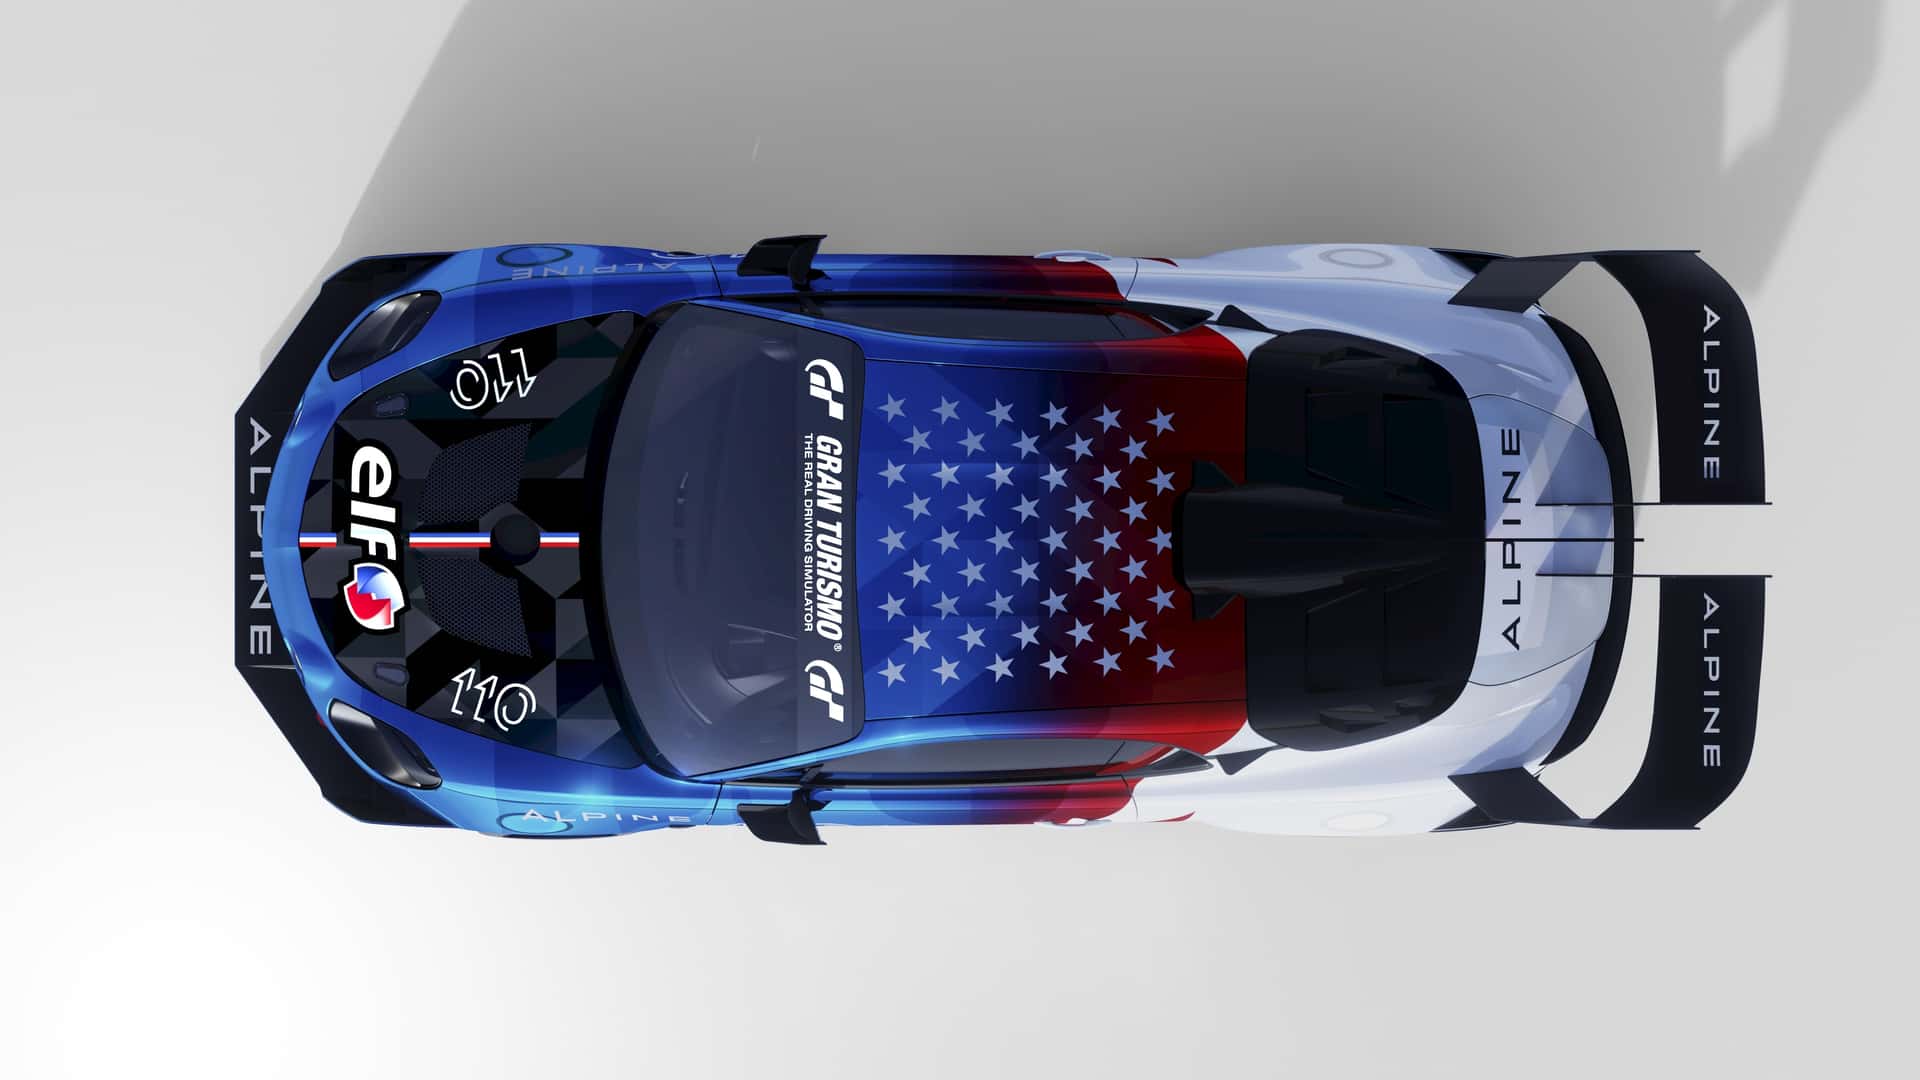 Alpine A110 хочет установить собственный рекорд на Пайкс-Пик и побить Porsche Cayman GT4 Clubsport